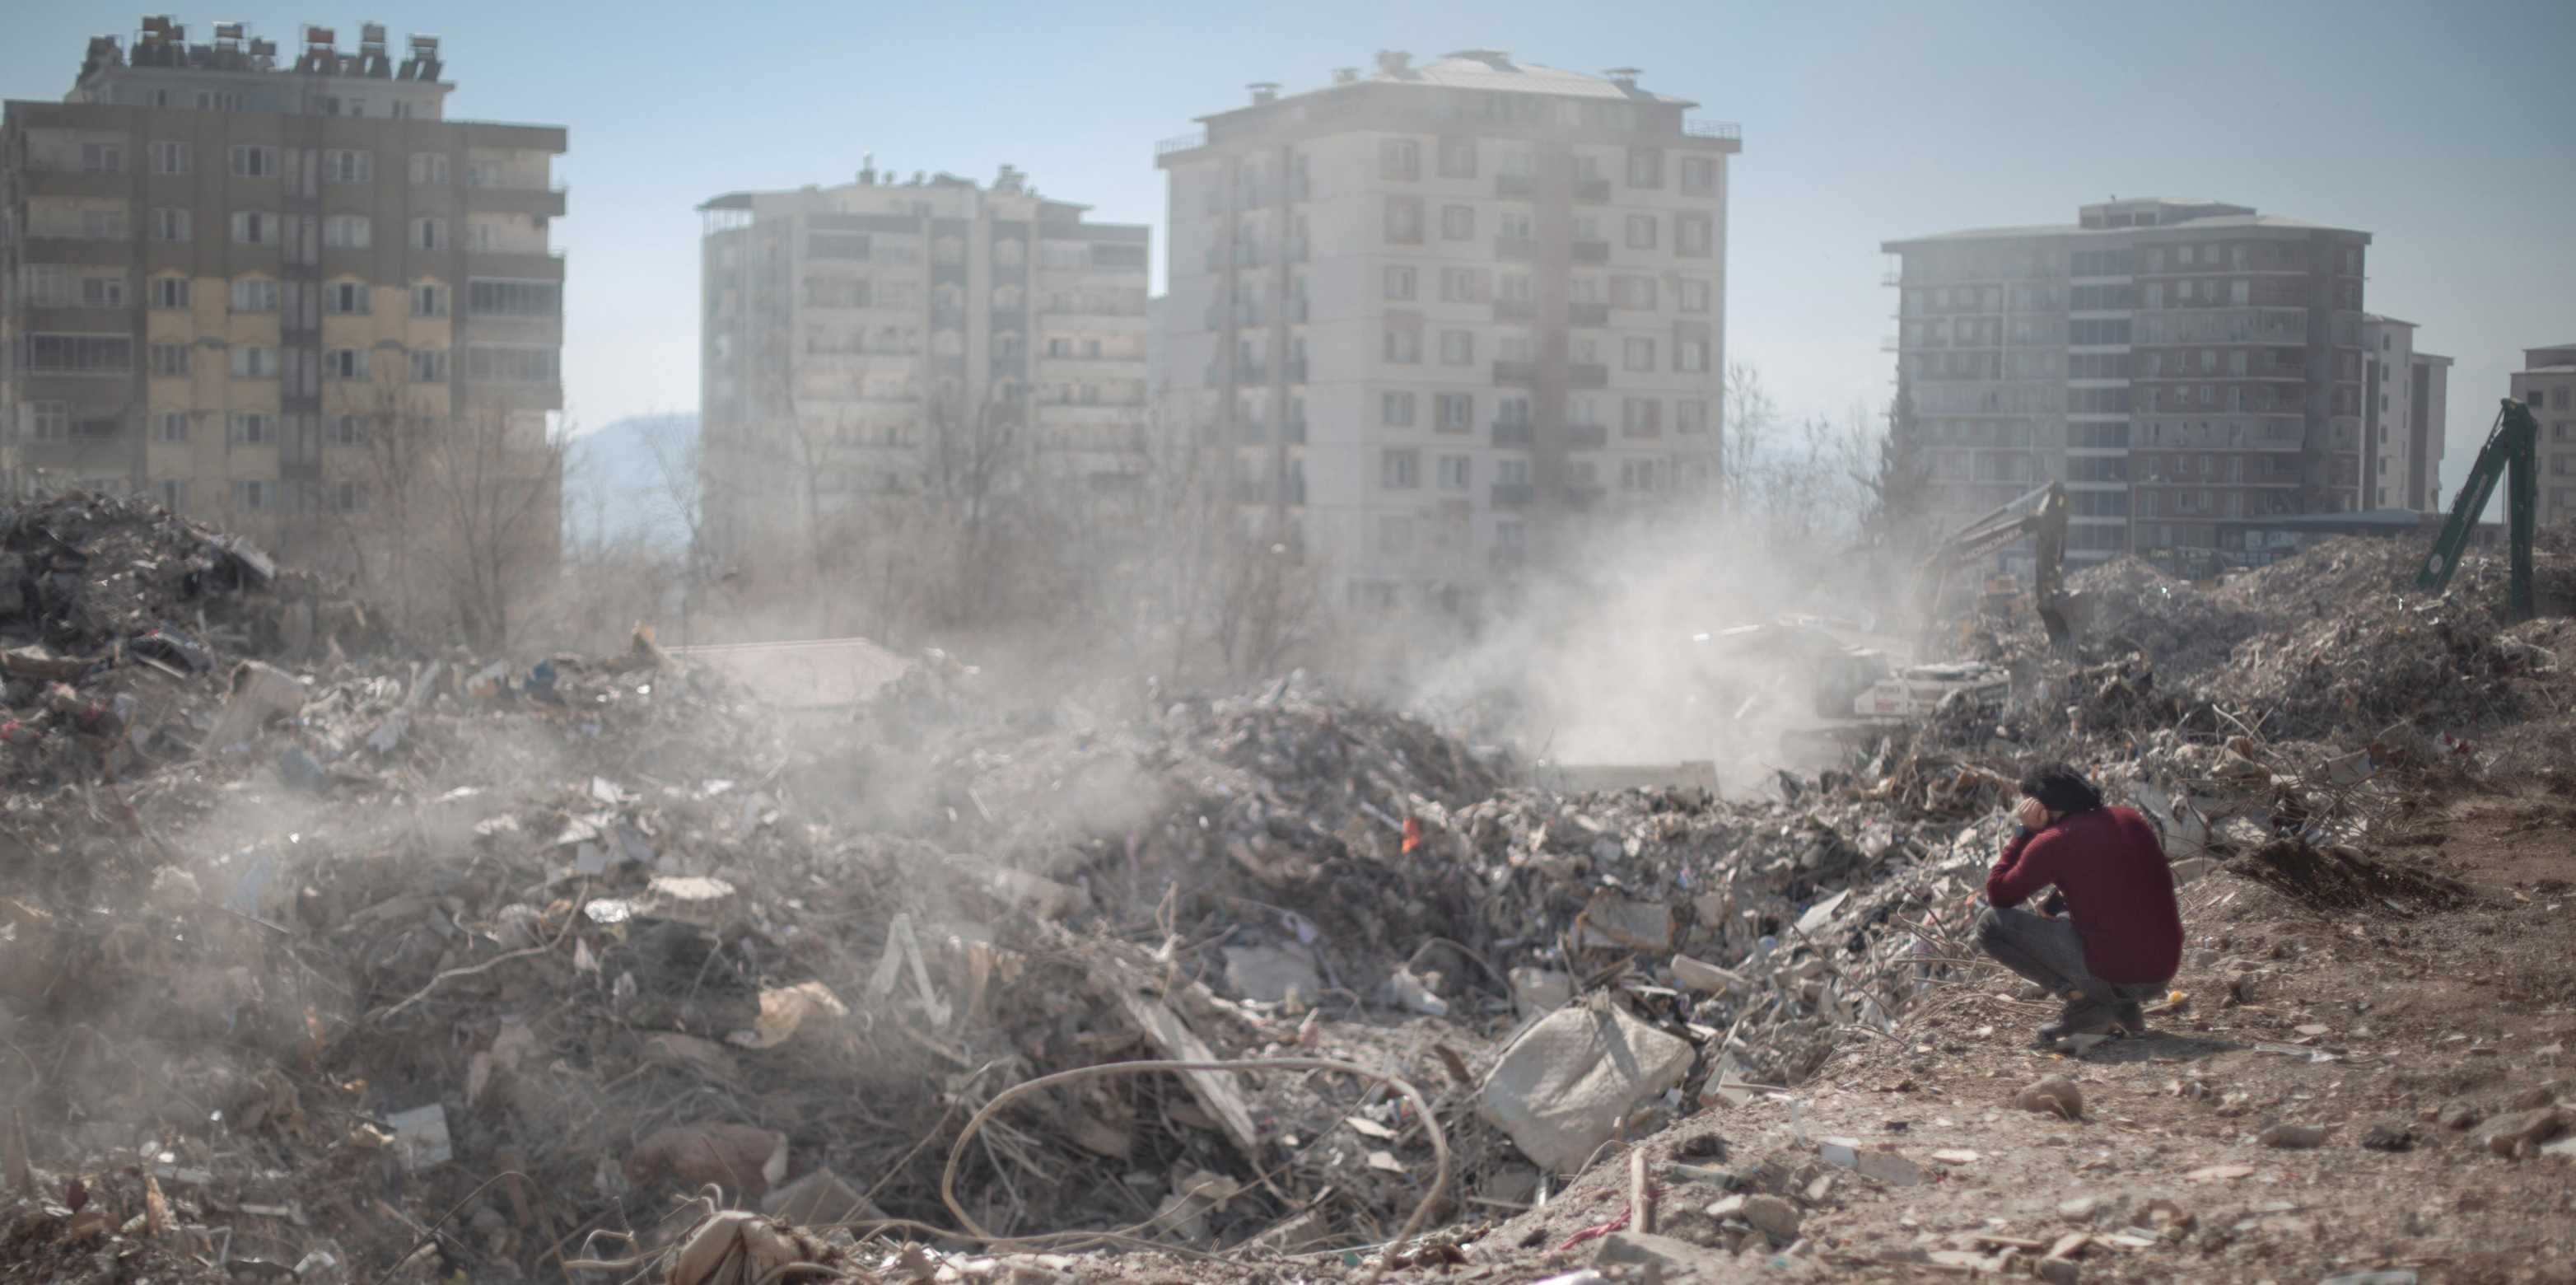 Umgebung der Türkei nach dem Beben. Ein Mann kniet vor den Trümmern.